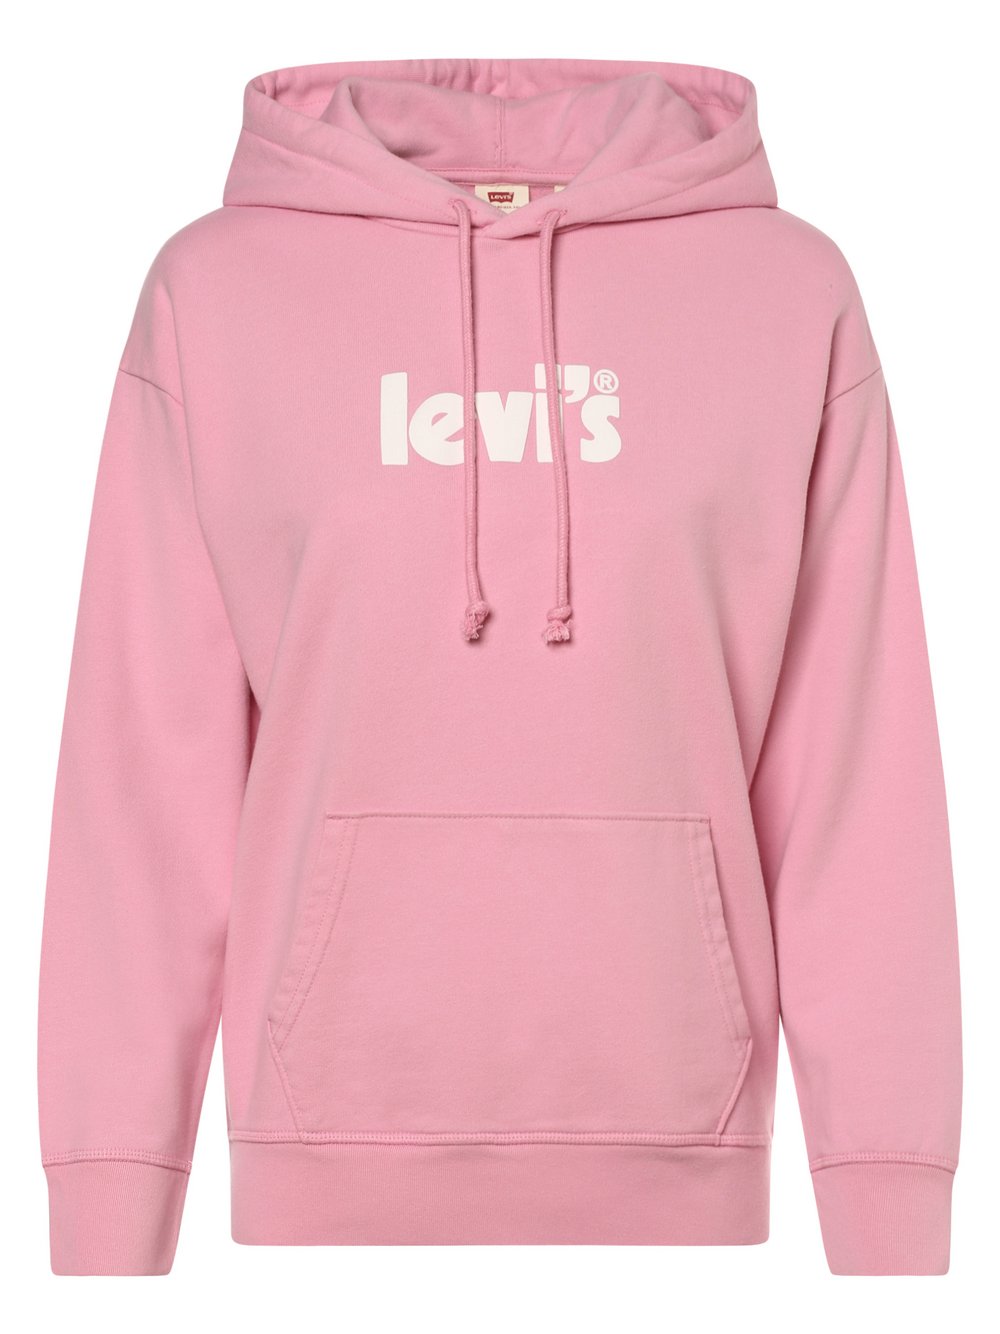 Levi's - Damska bluza z kapturem, różowy